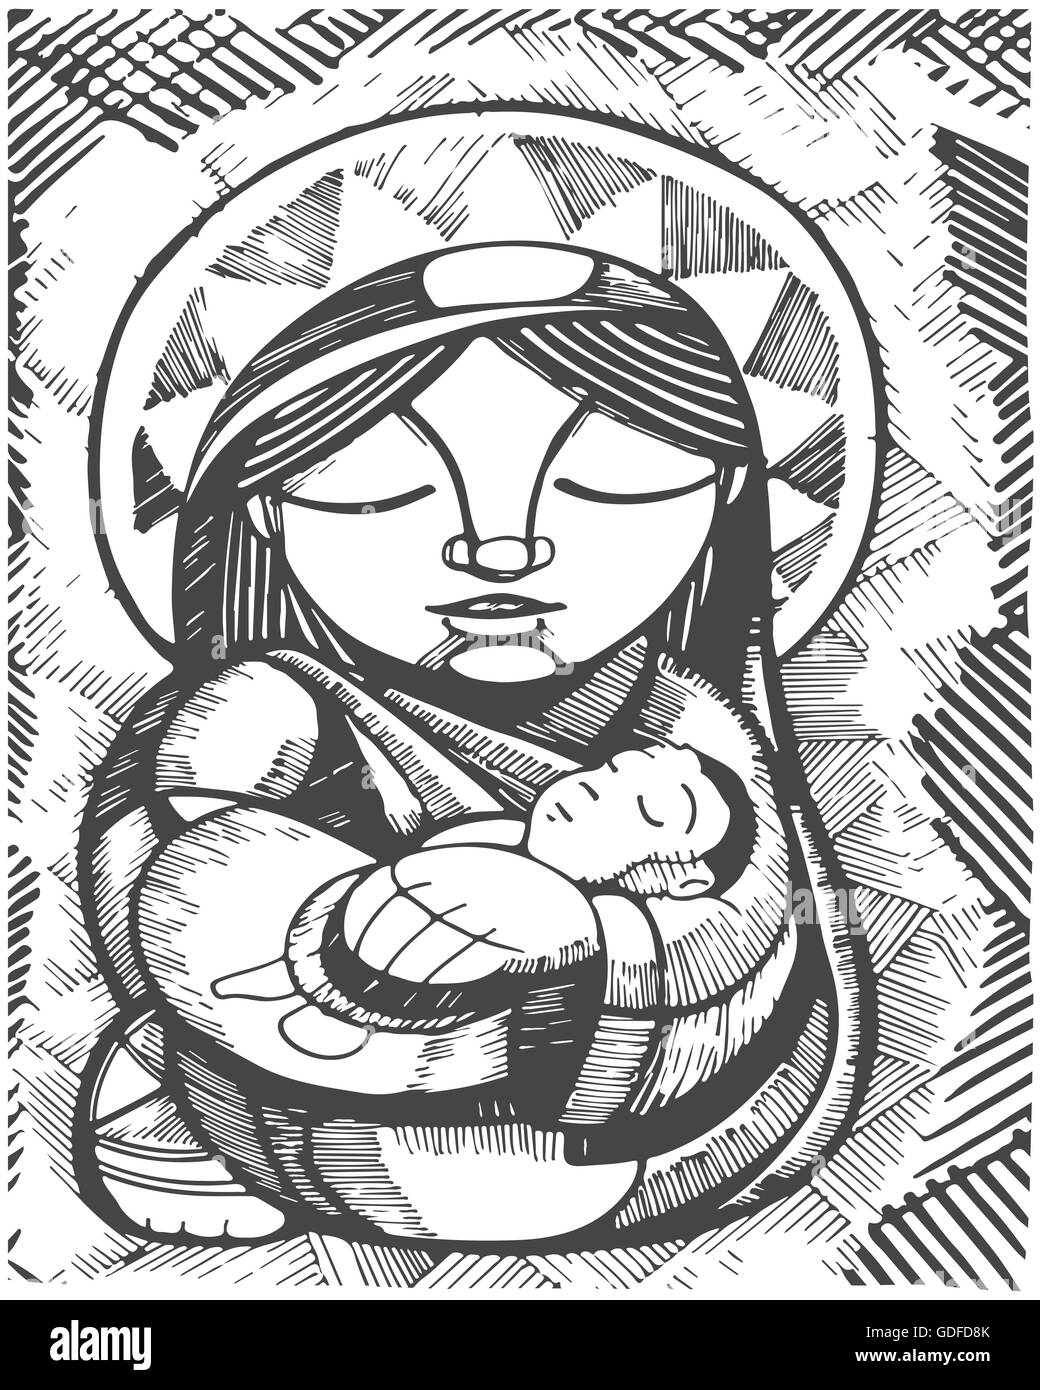 Illustration à la main ou d'un dessin de la Vierge Marie la mère et l'Enfant Jésus Christ, dans un style indigène Banque D'Images